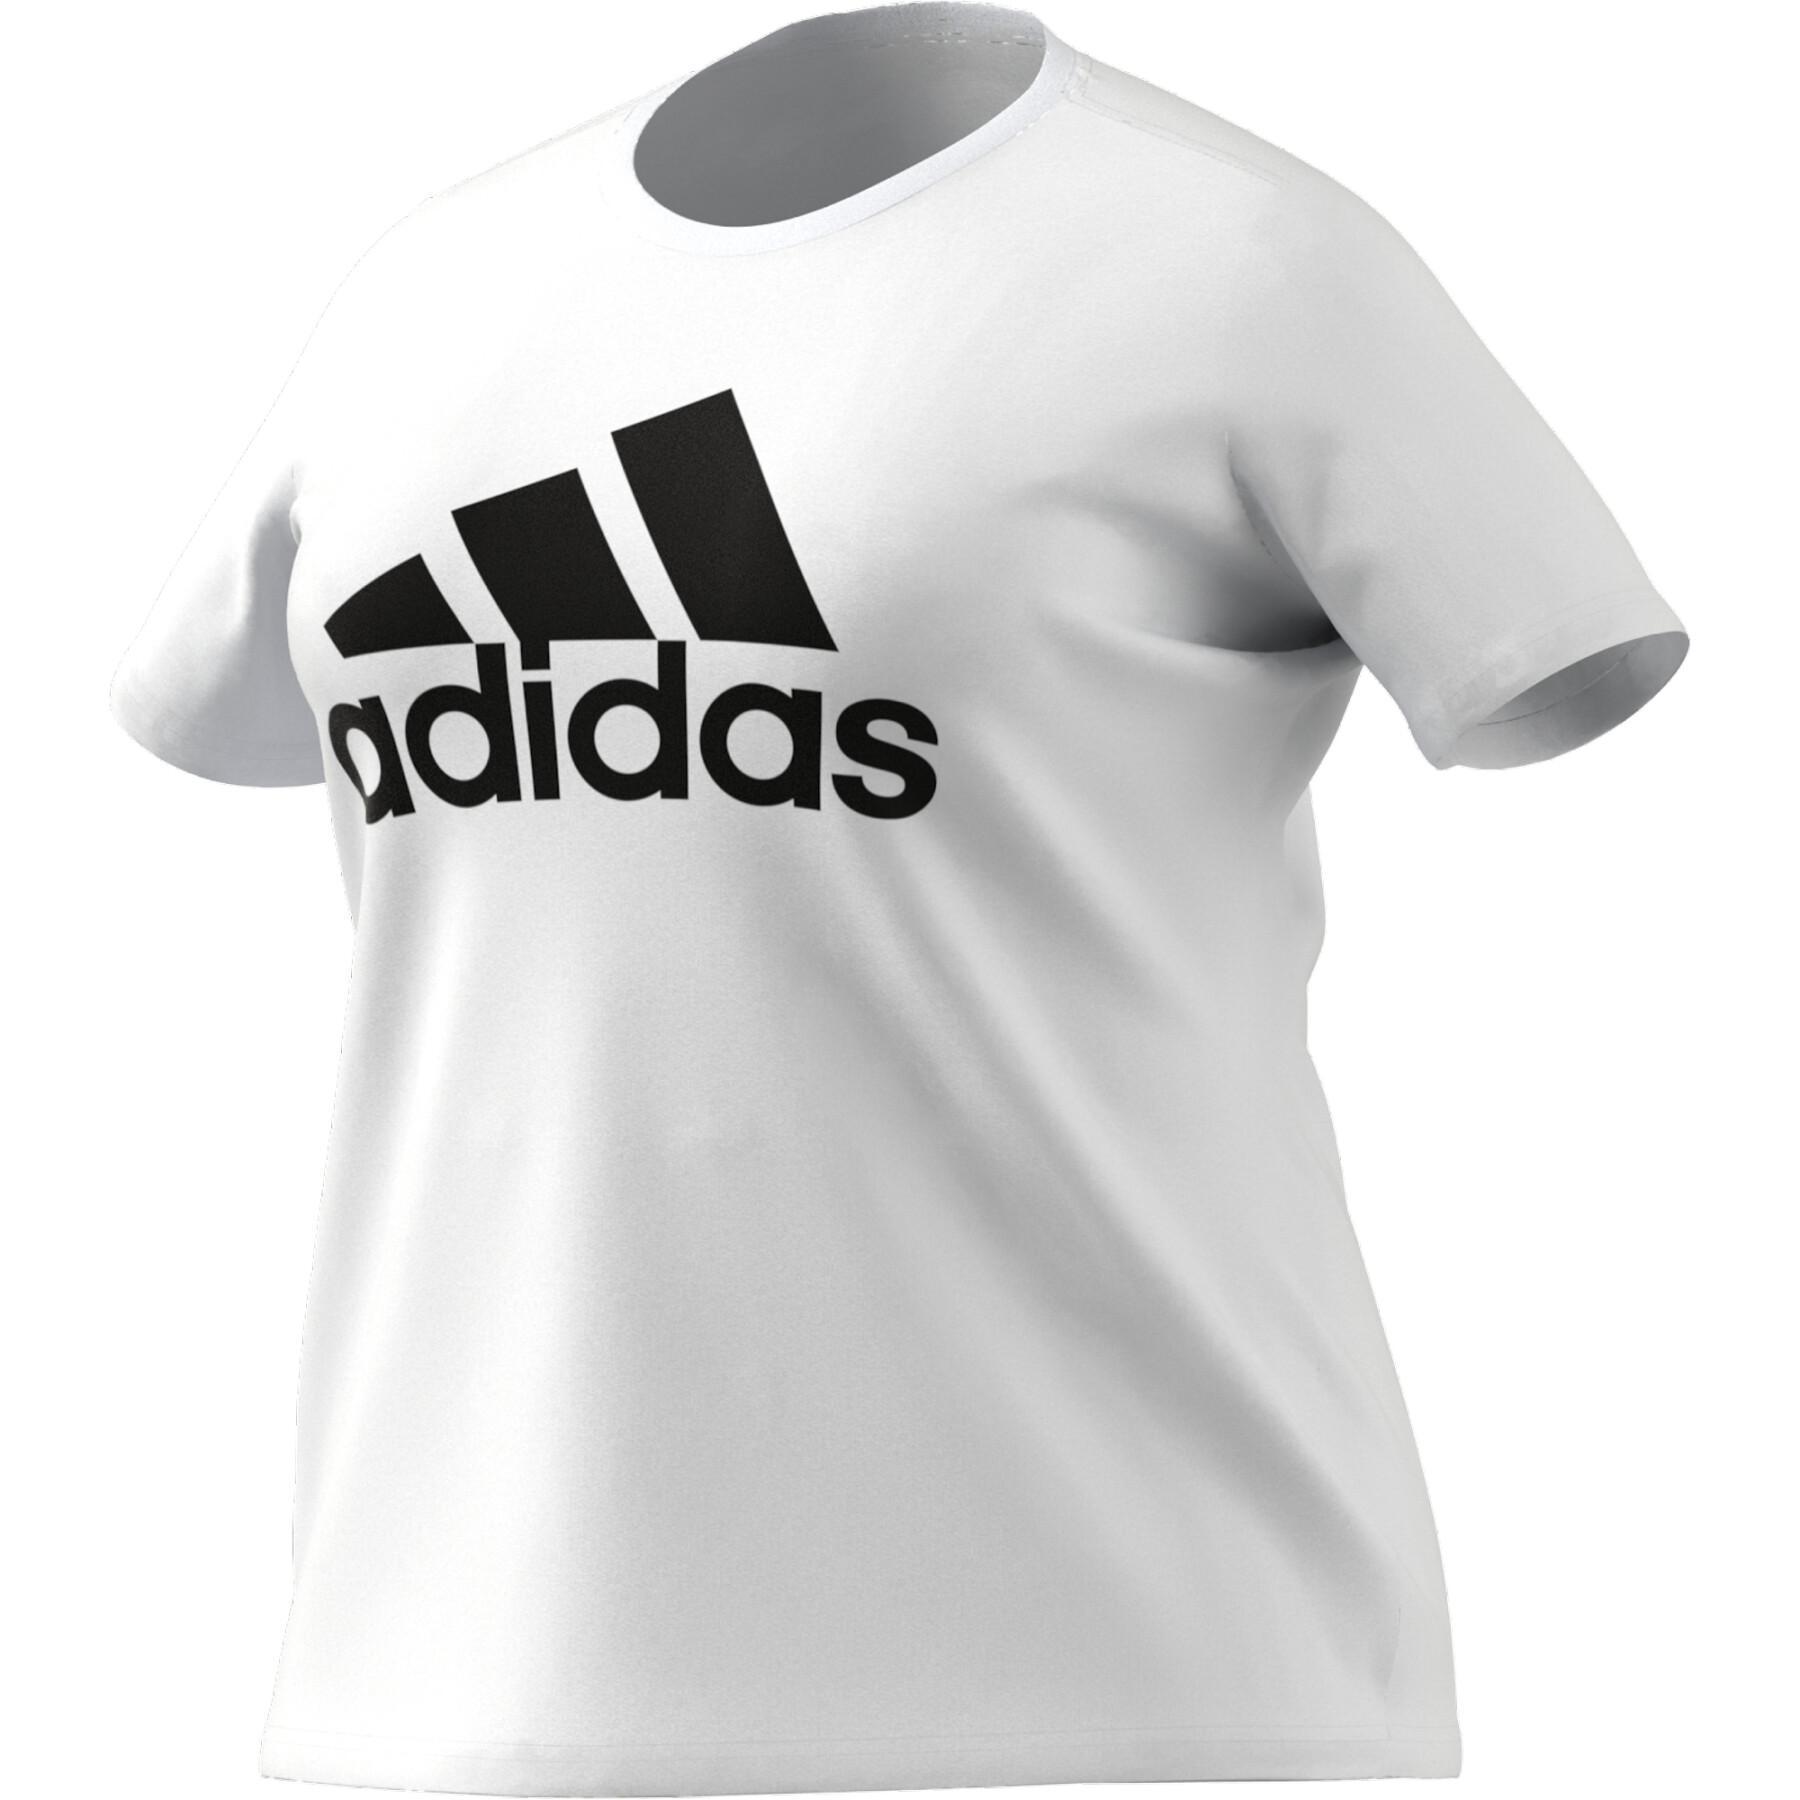 Koszulka damska w dużym rozmiarze adidas Essentials Logo